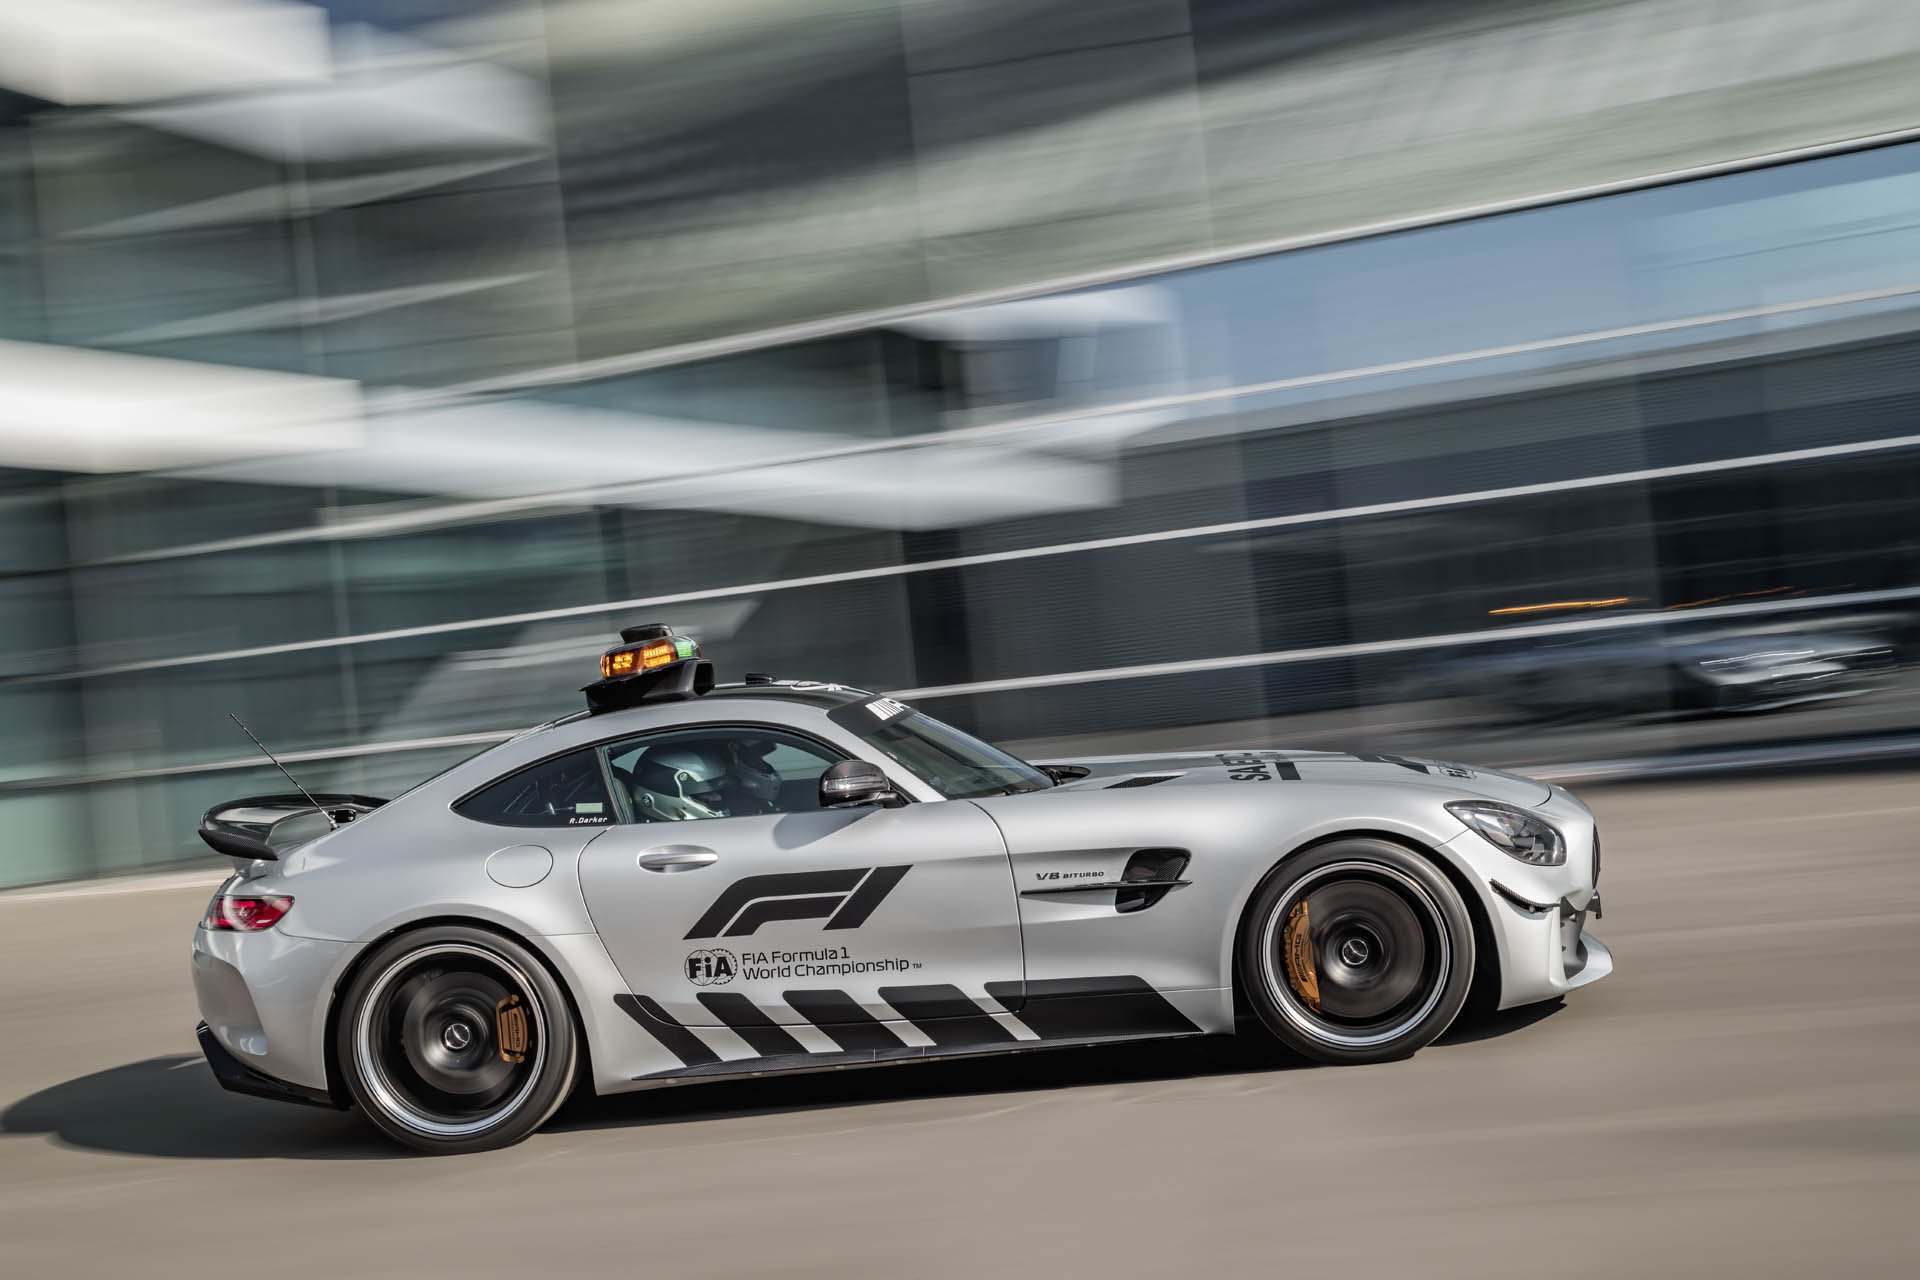 Mercedes-AMG představil nový Safety Car a záchranářský vůz pro závody Formule 1